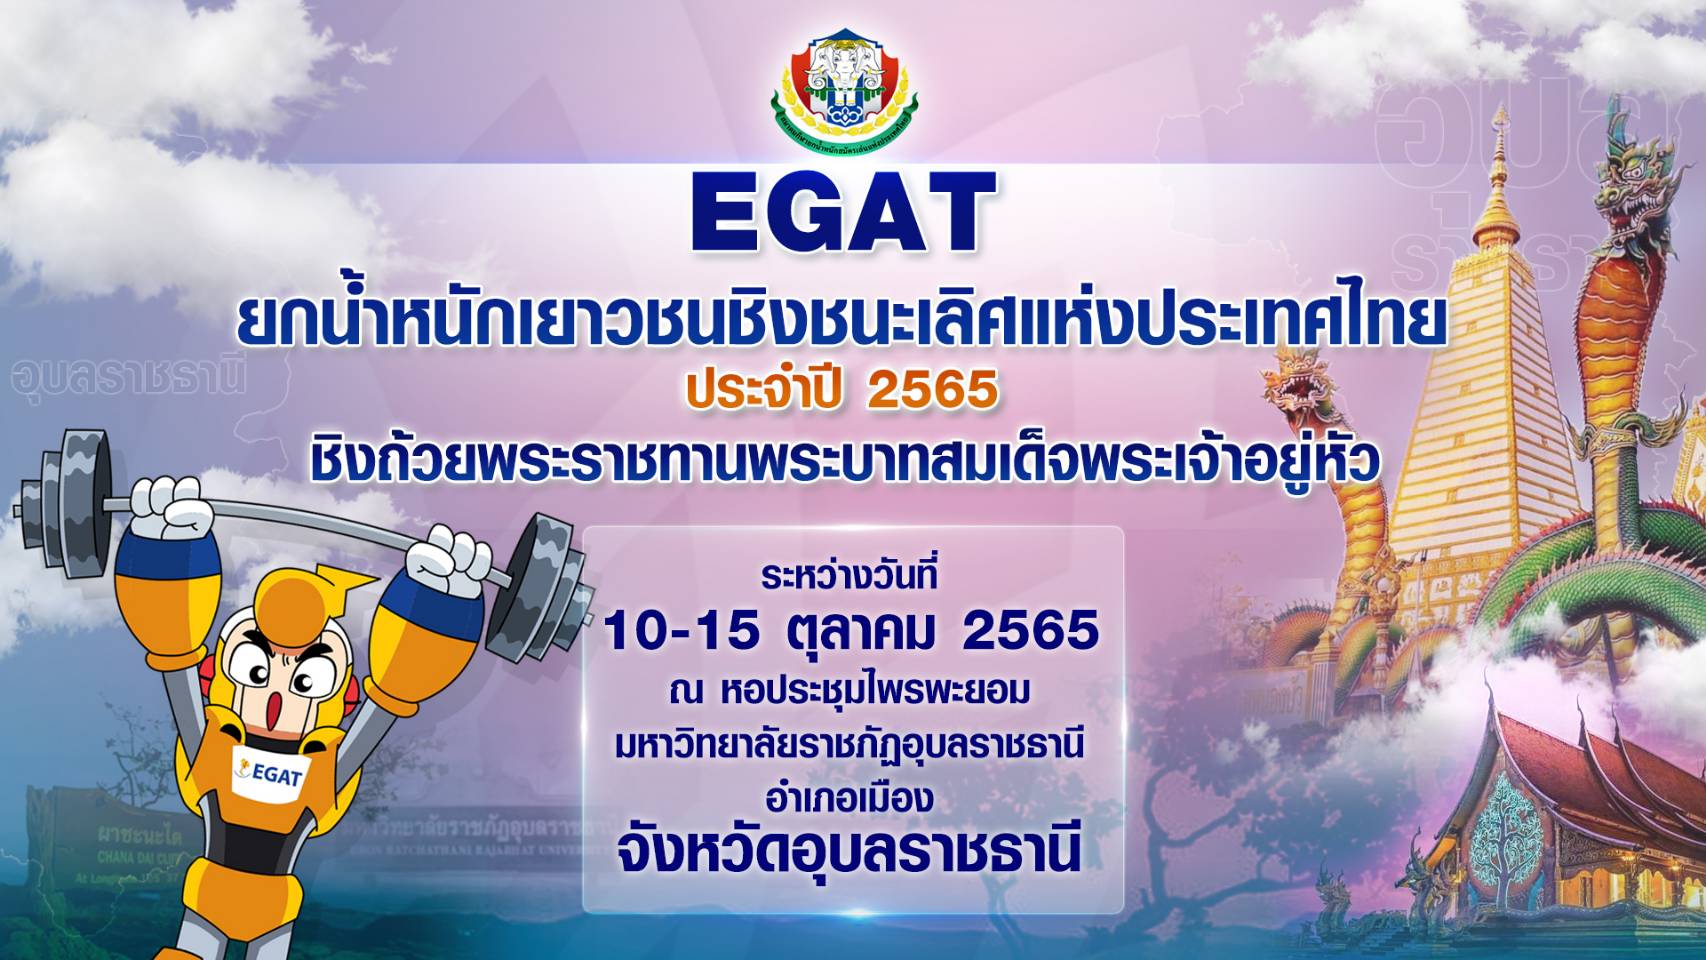 EGAT ยกน้ำหนักเยาวชนชิงชนะเลิศแห่งประเทศไทย ประจำปี 2565